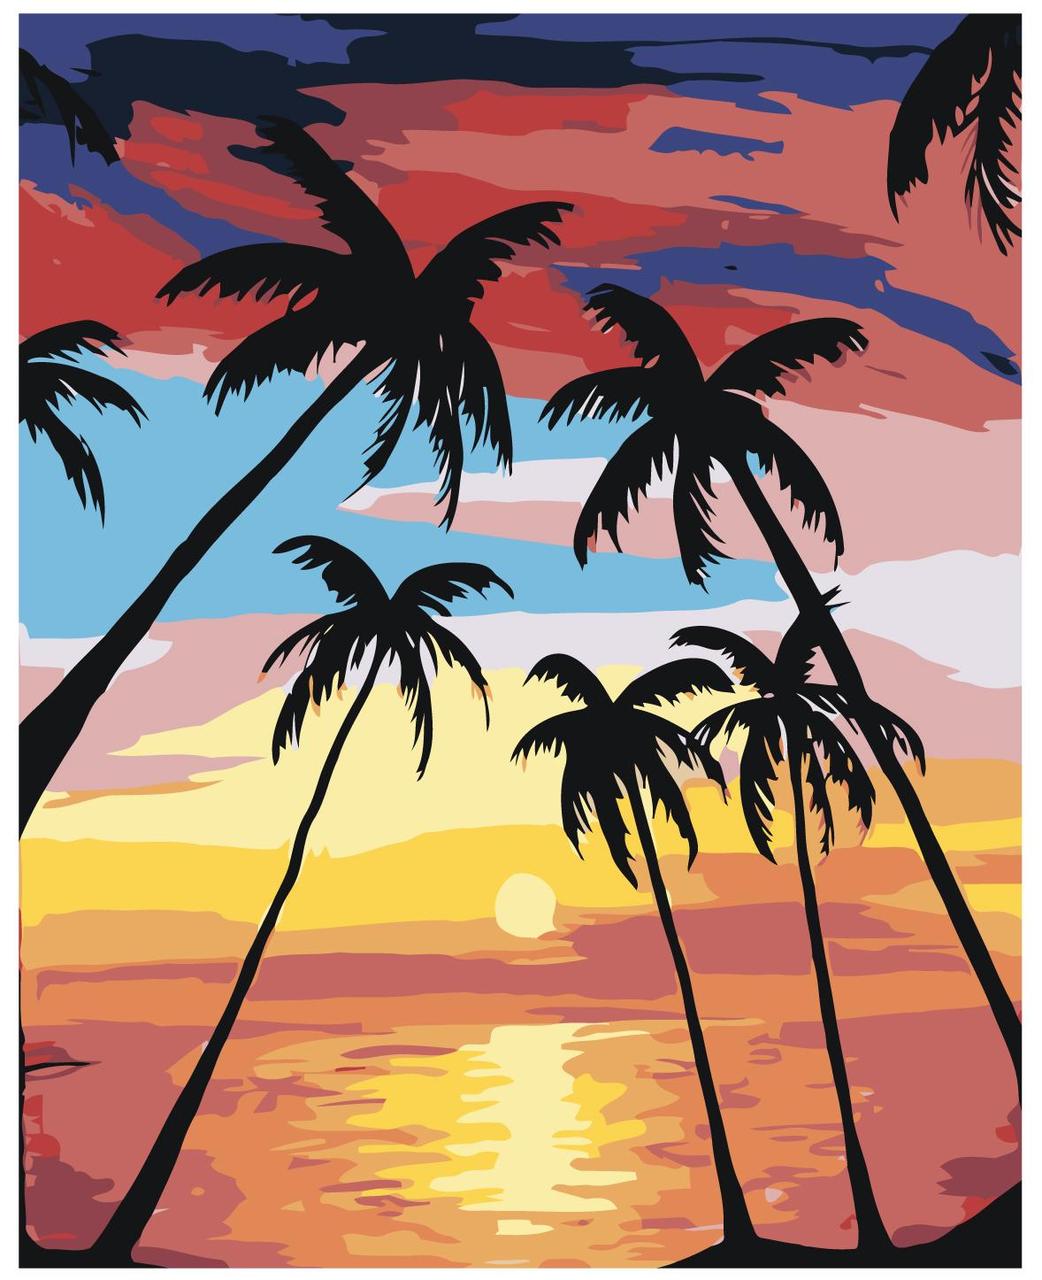 Картина по номерам Тропический закат 40 x 50 | RA124 | SLAVINA